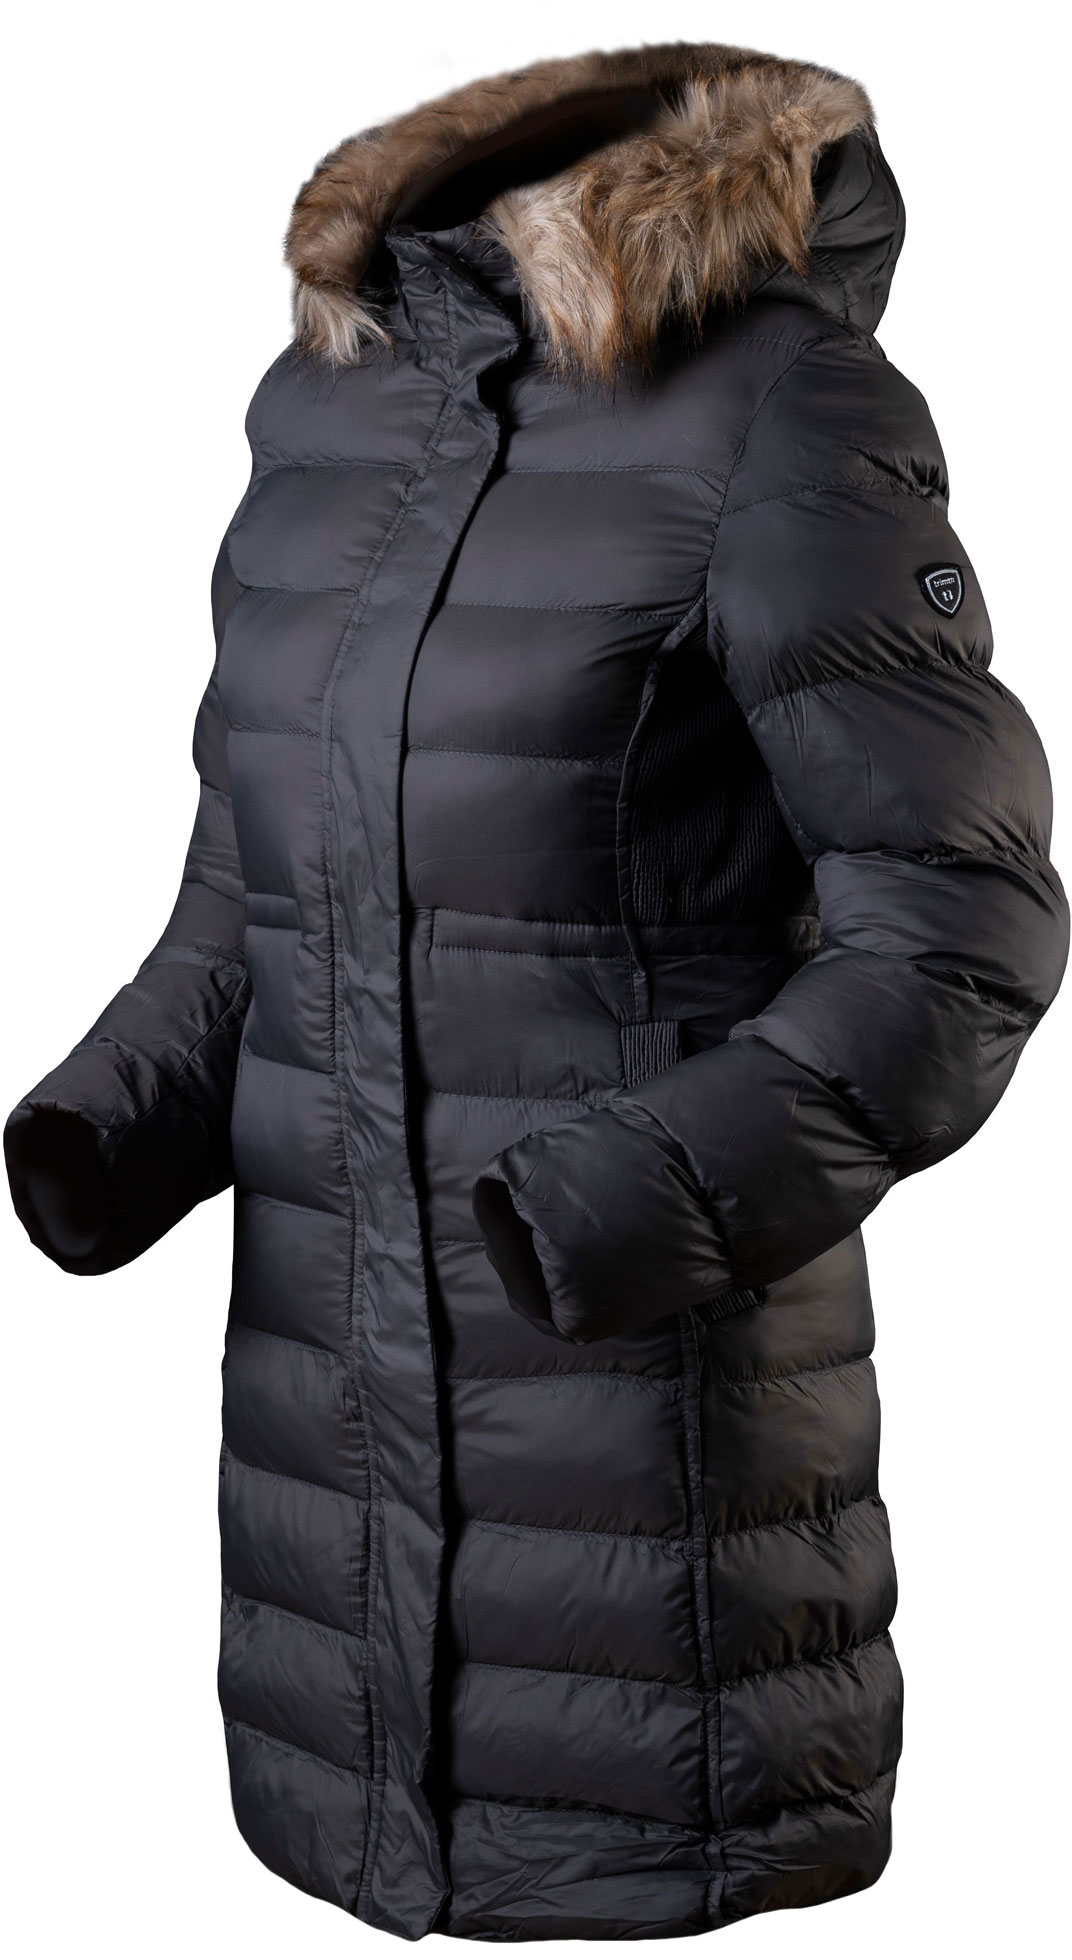 Women's winter jacket